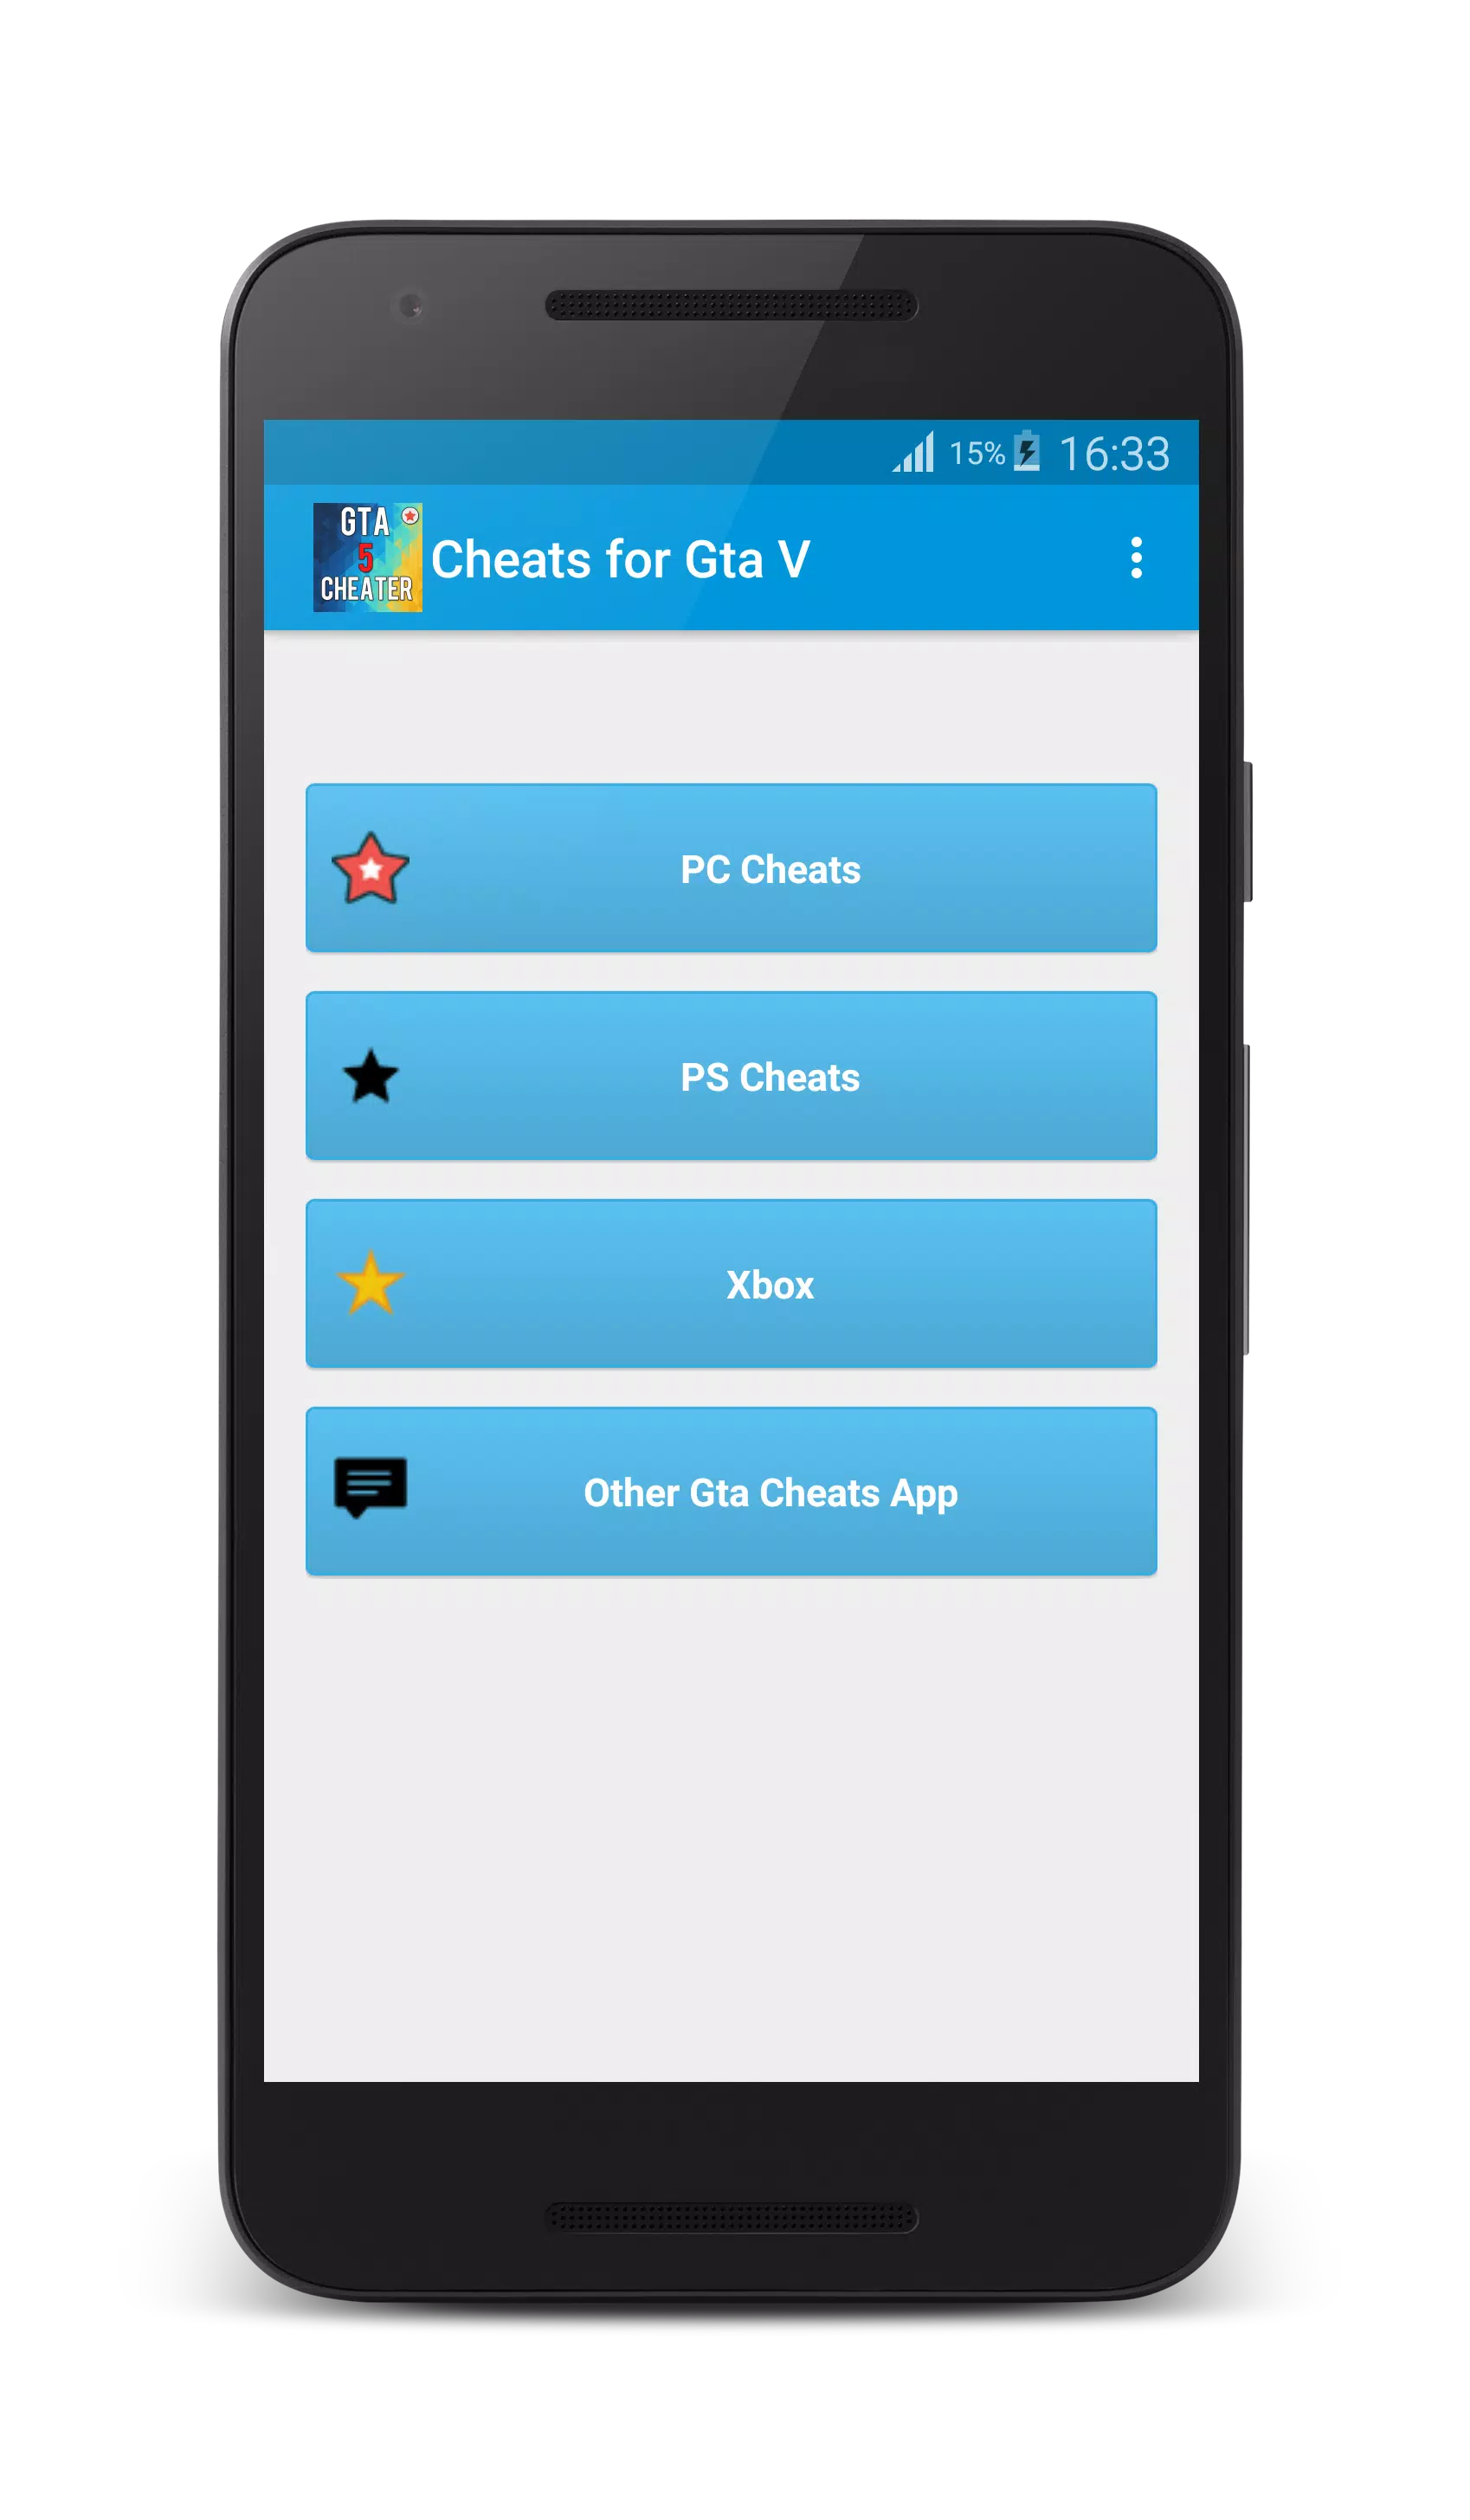 Download do APK de Truques de GTA V para Android